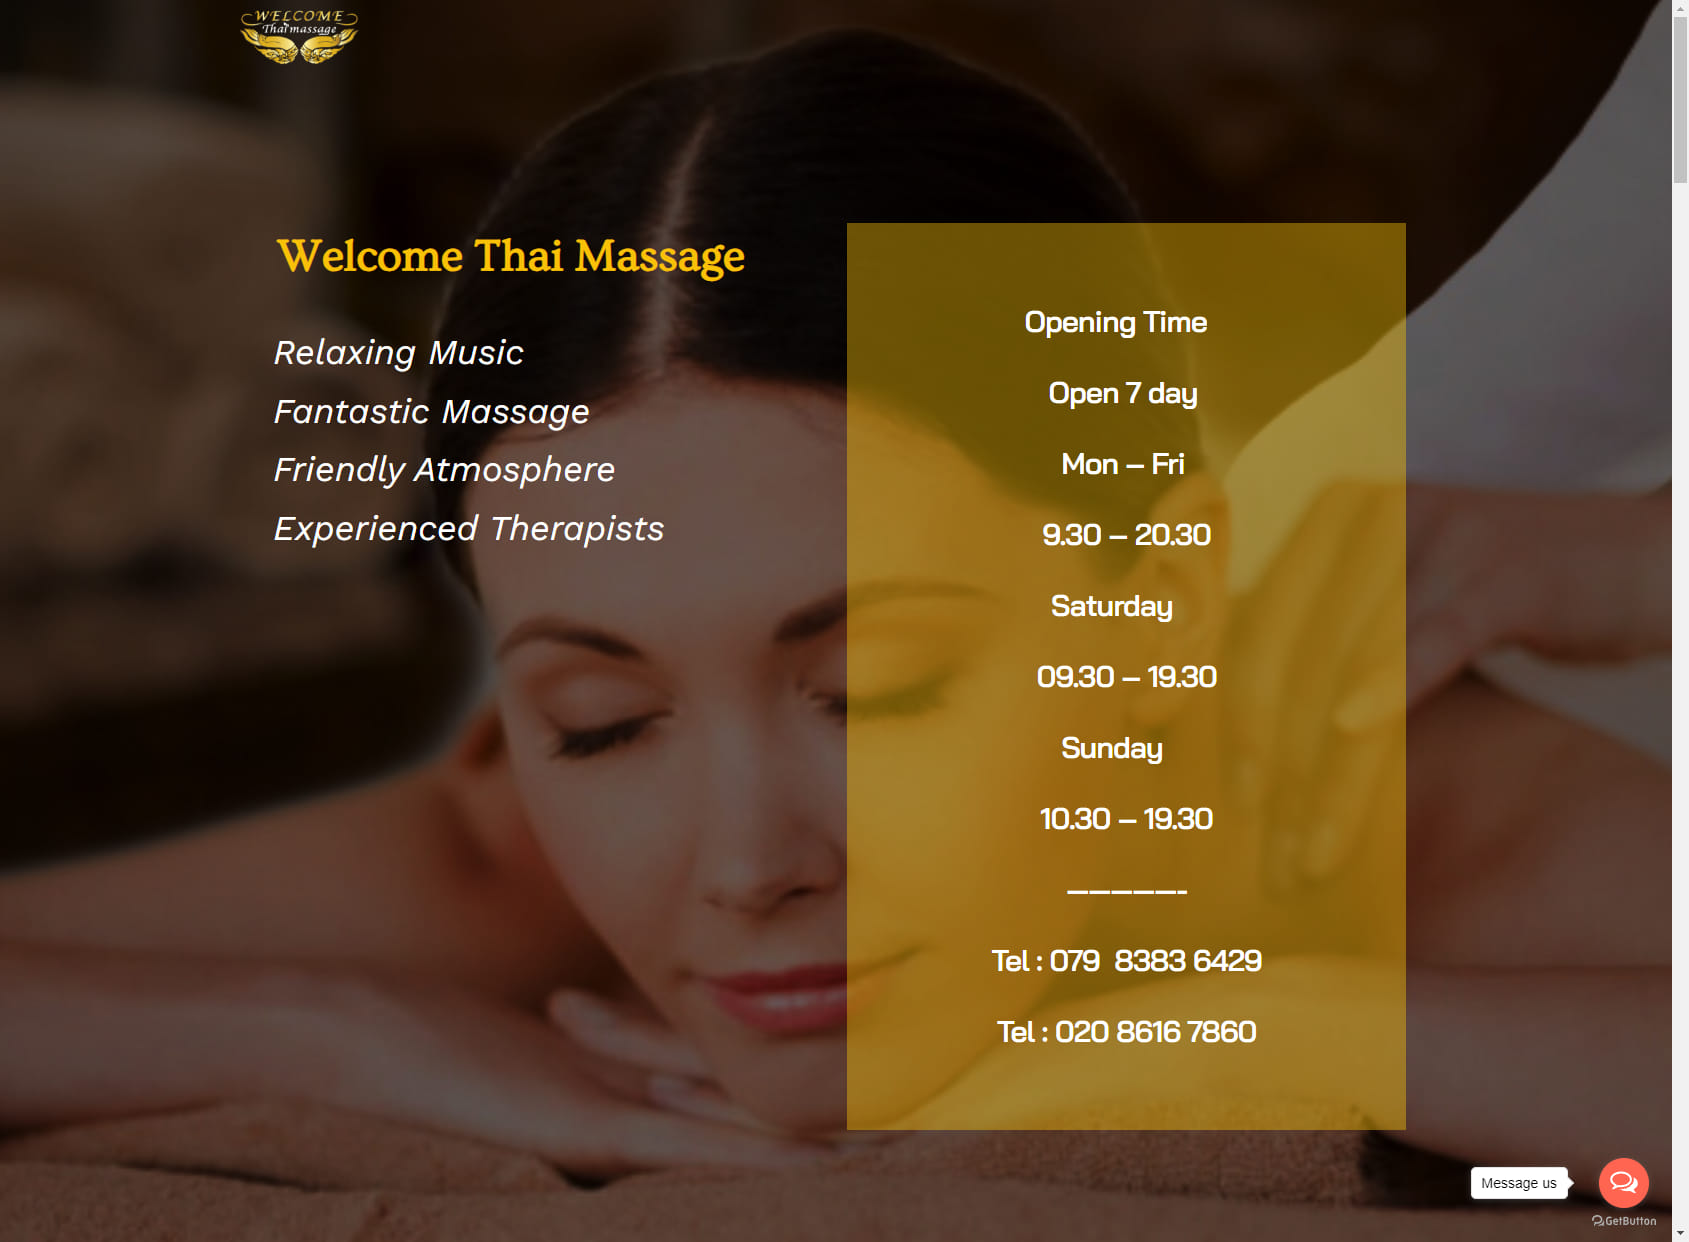 Welcome Thai Massage